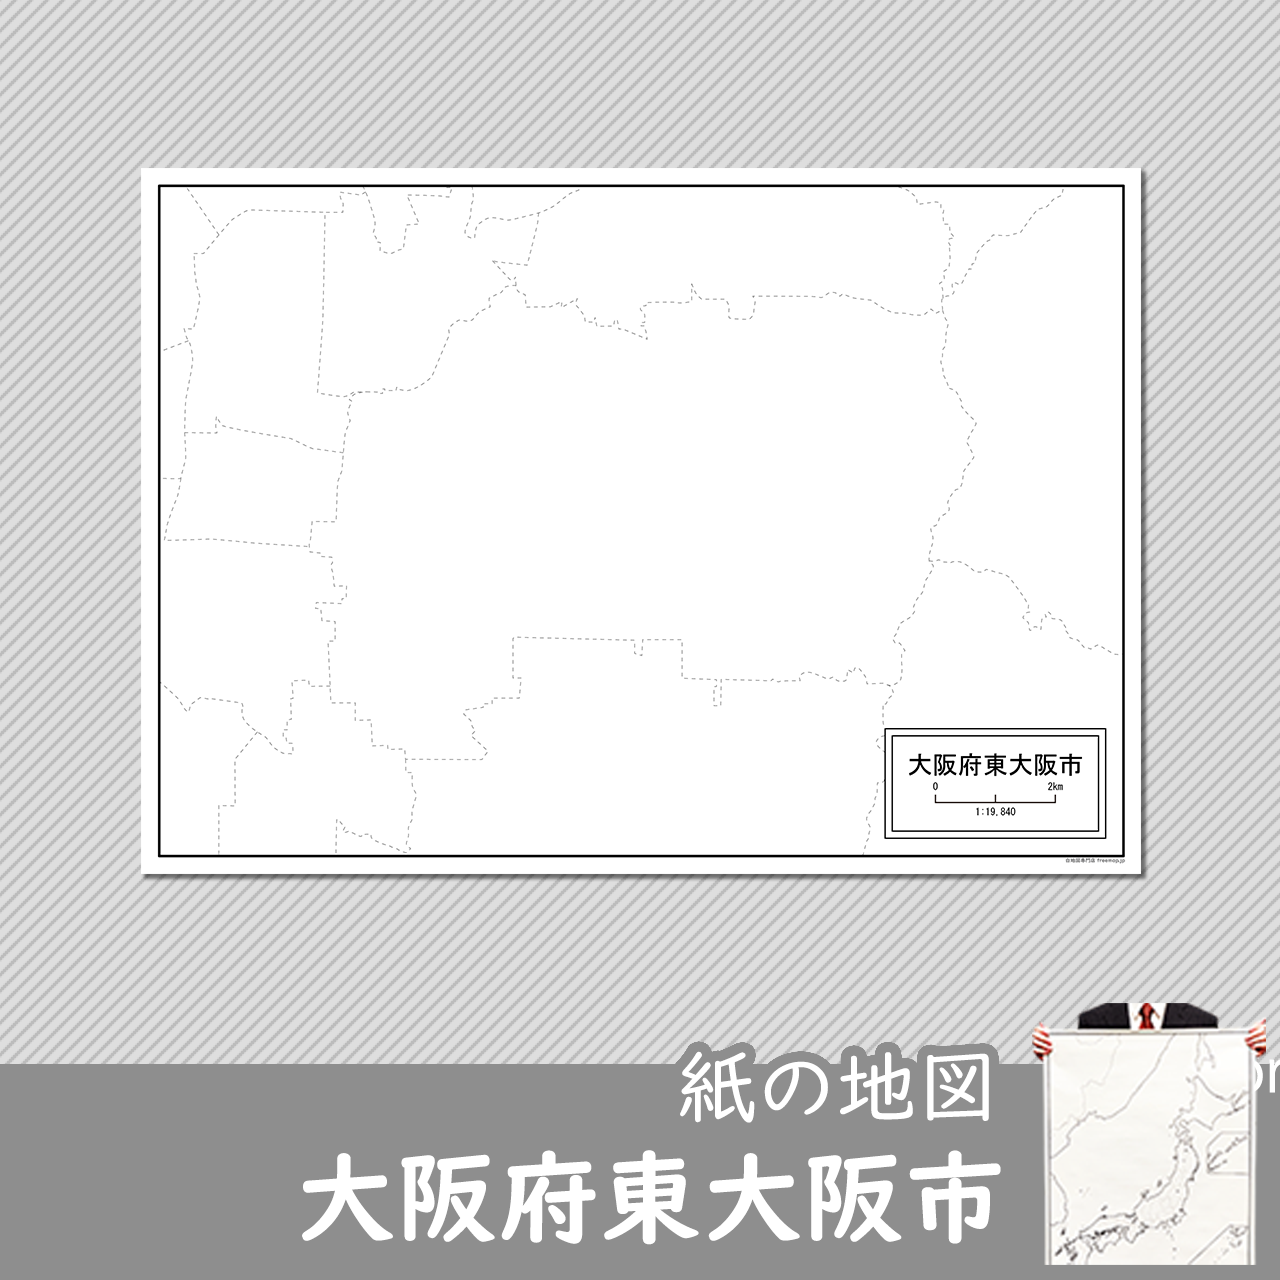 東大阪市の紙の白地図のサムネイル